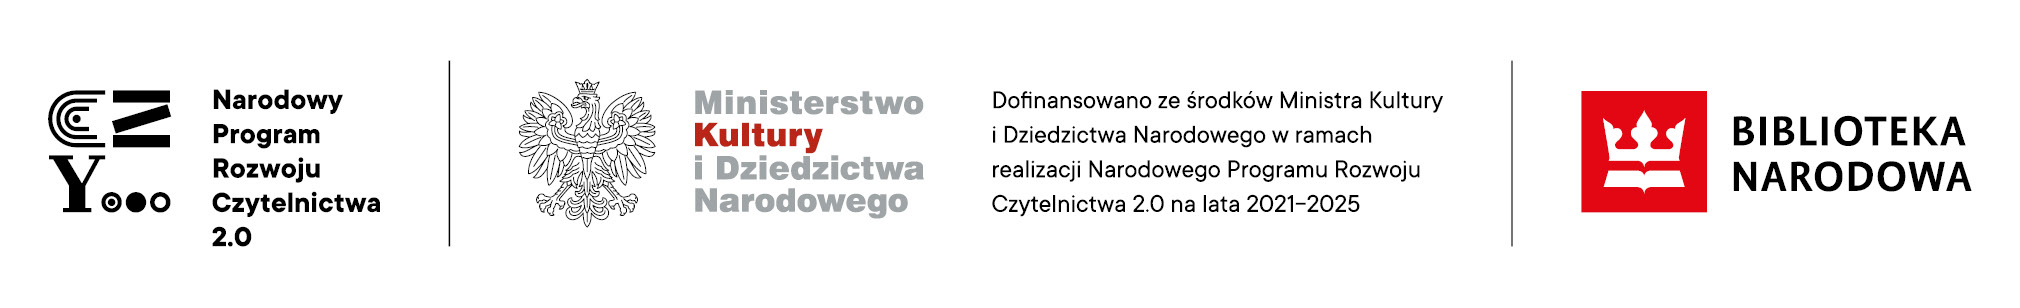 Belka logotypów. Od lewej: Narodowy Program Rozwoju Czytelnictwa 2.0, Ministerstwo Kultury i Dziedzictwa Narodowego, Biblioteka Narodowa